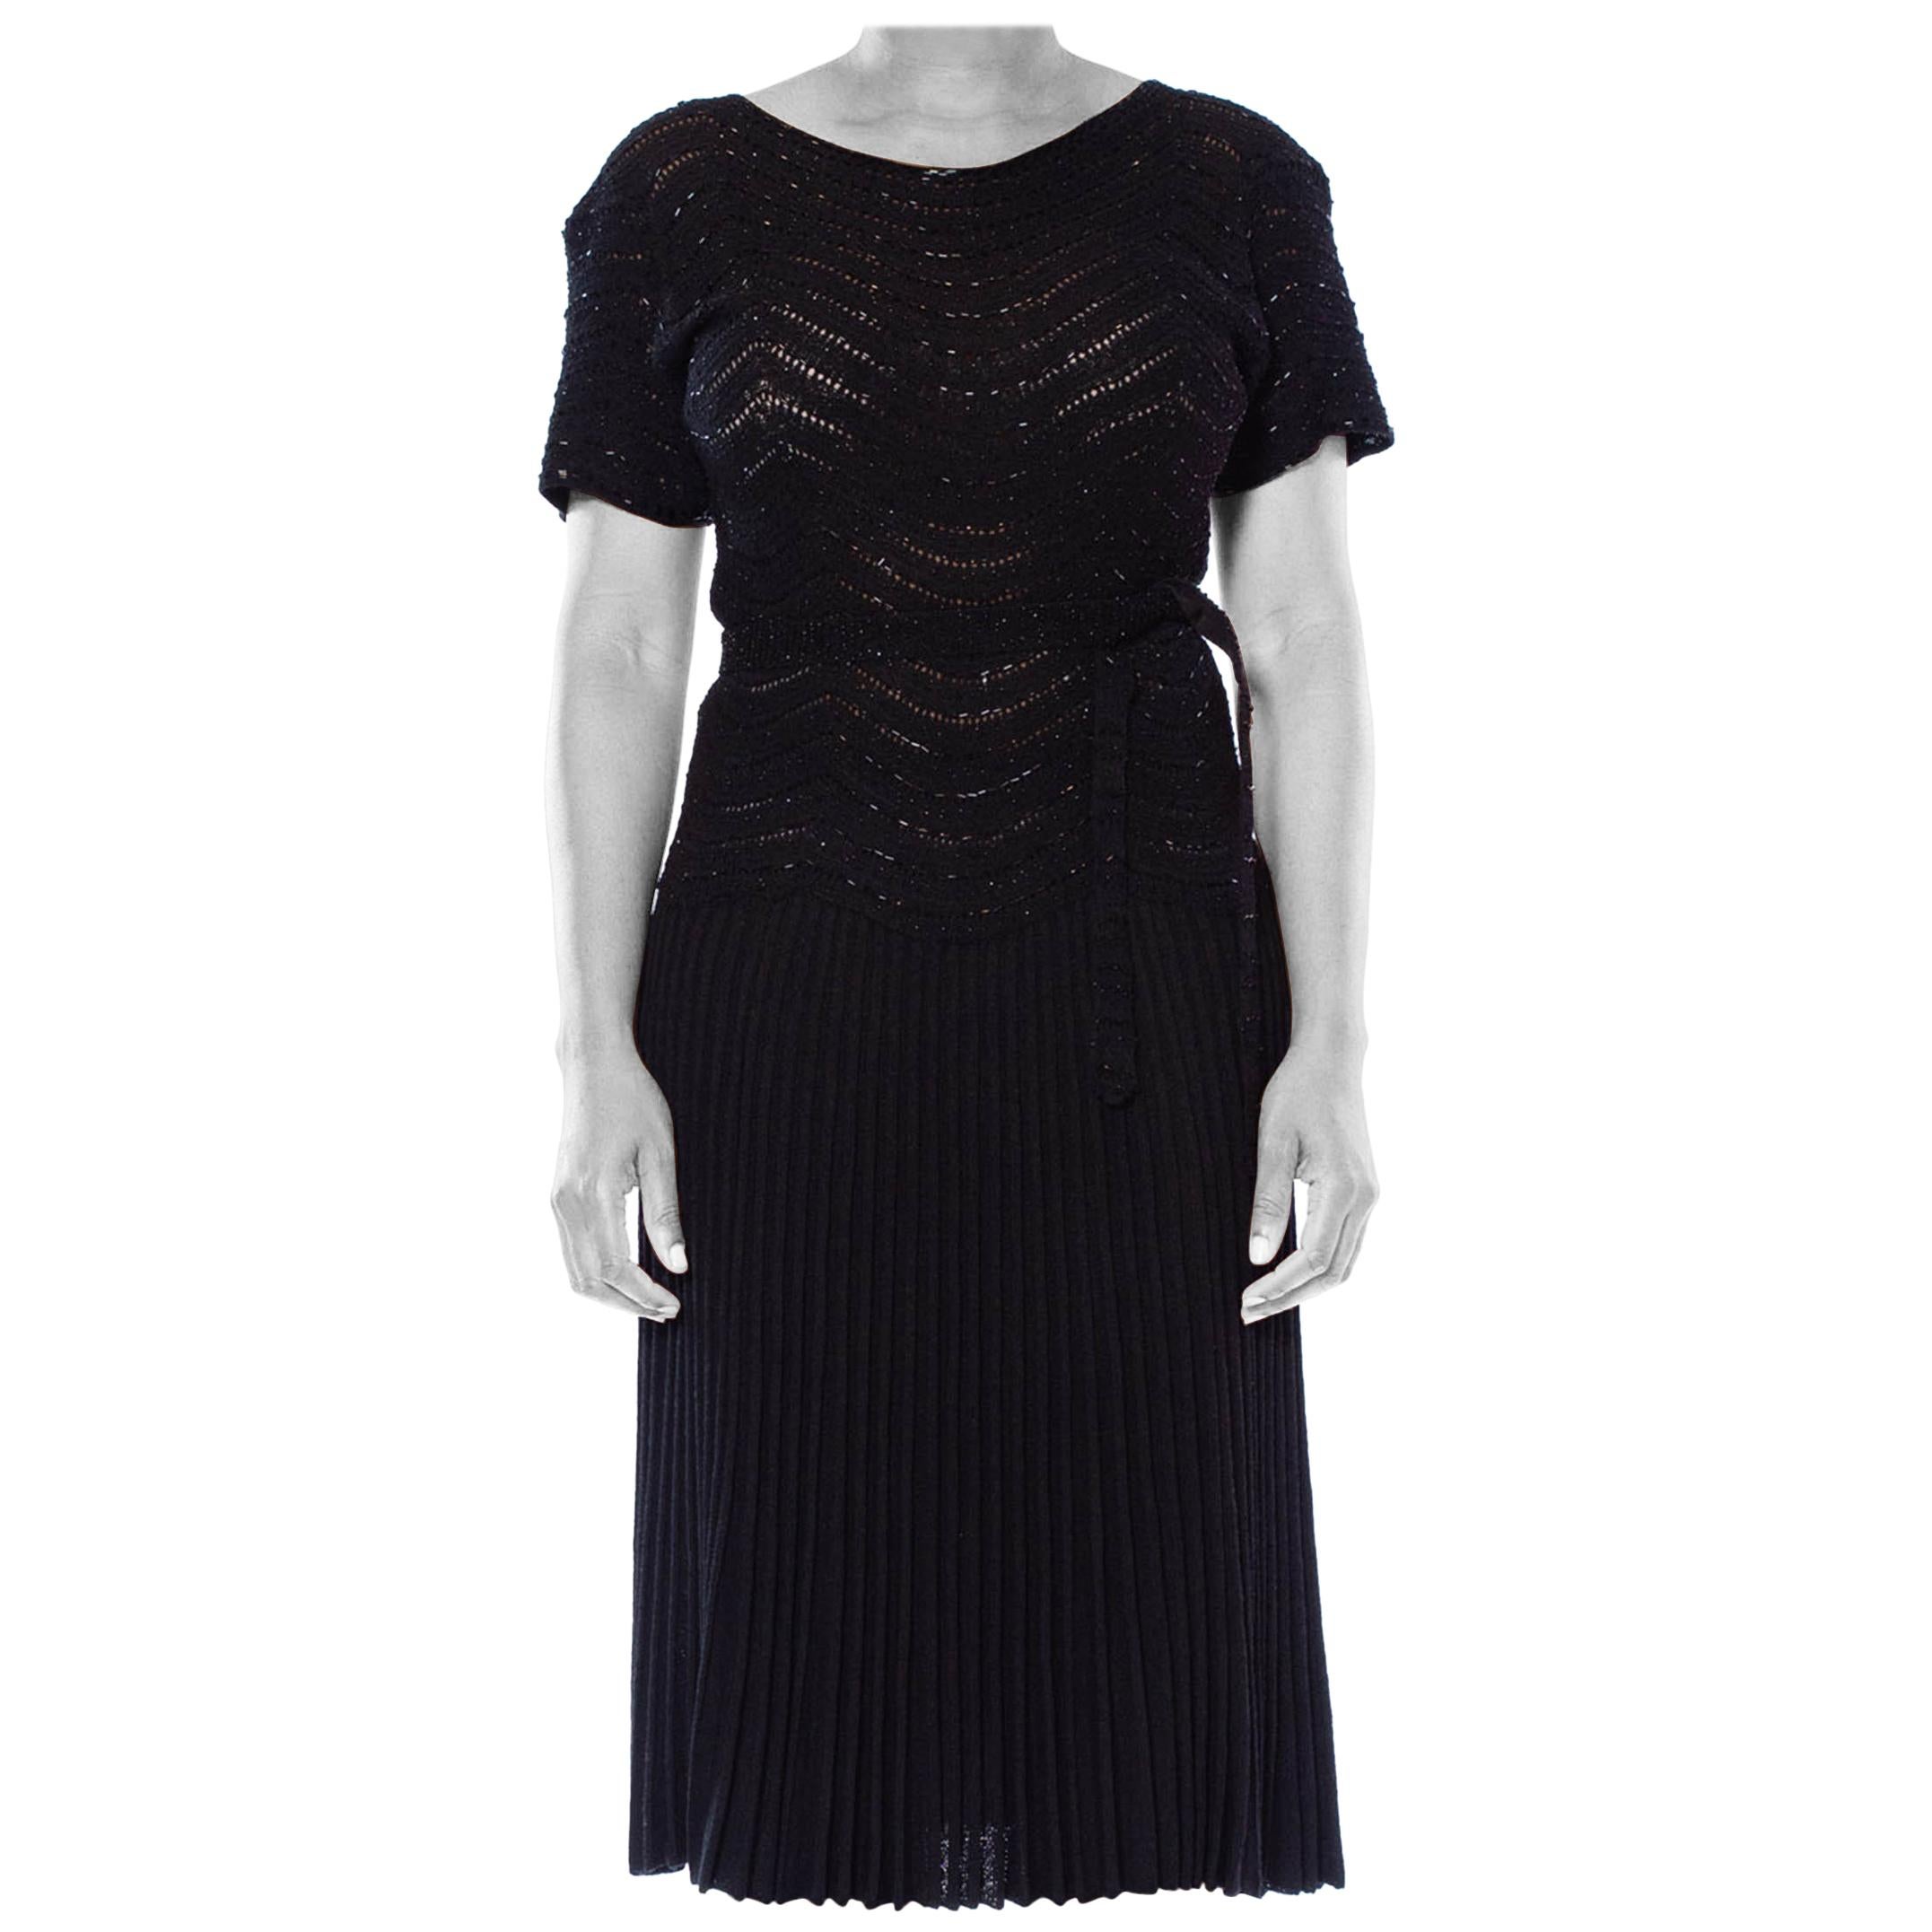 Schwarzes, perlenbesetztes Wiggle-Kleid aus Viskose-Strick, 1950er Jahre